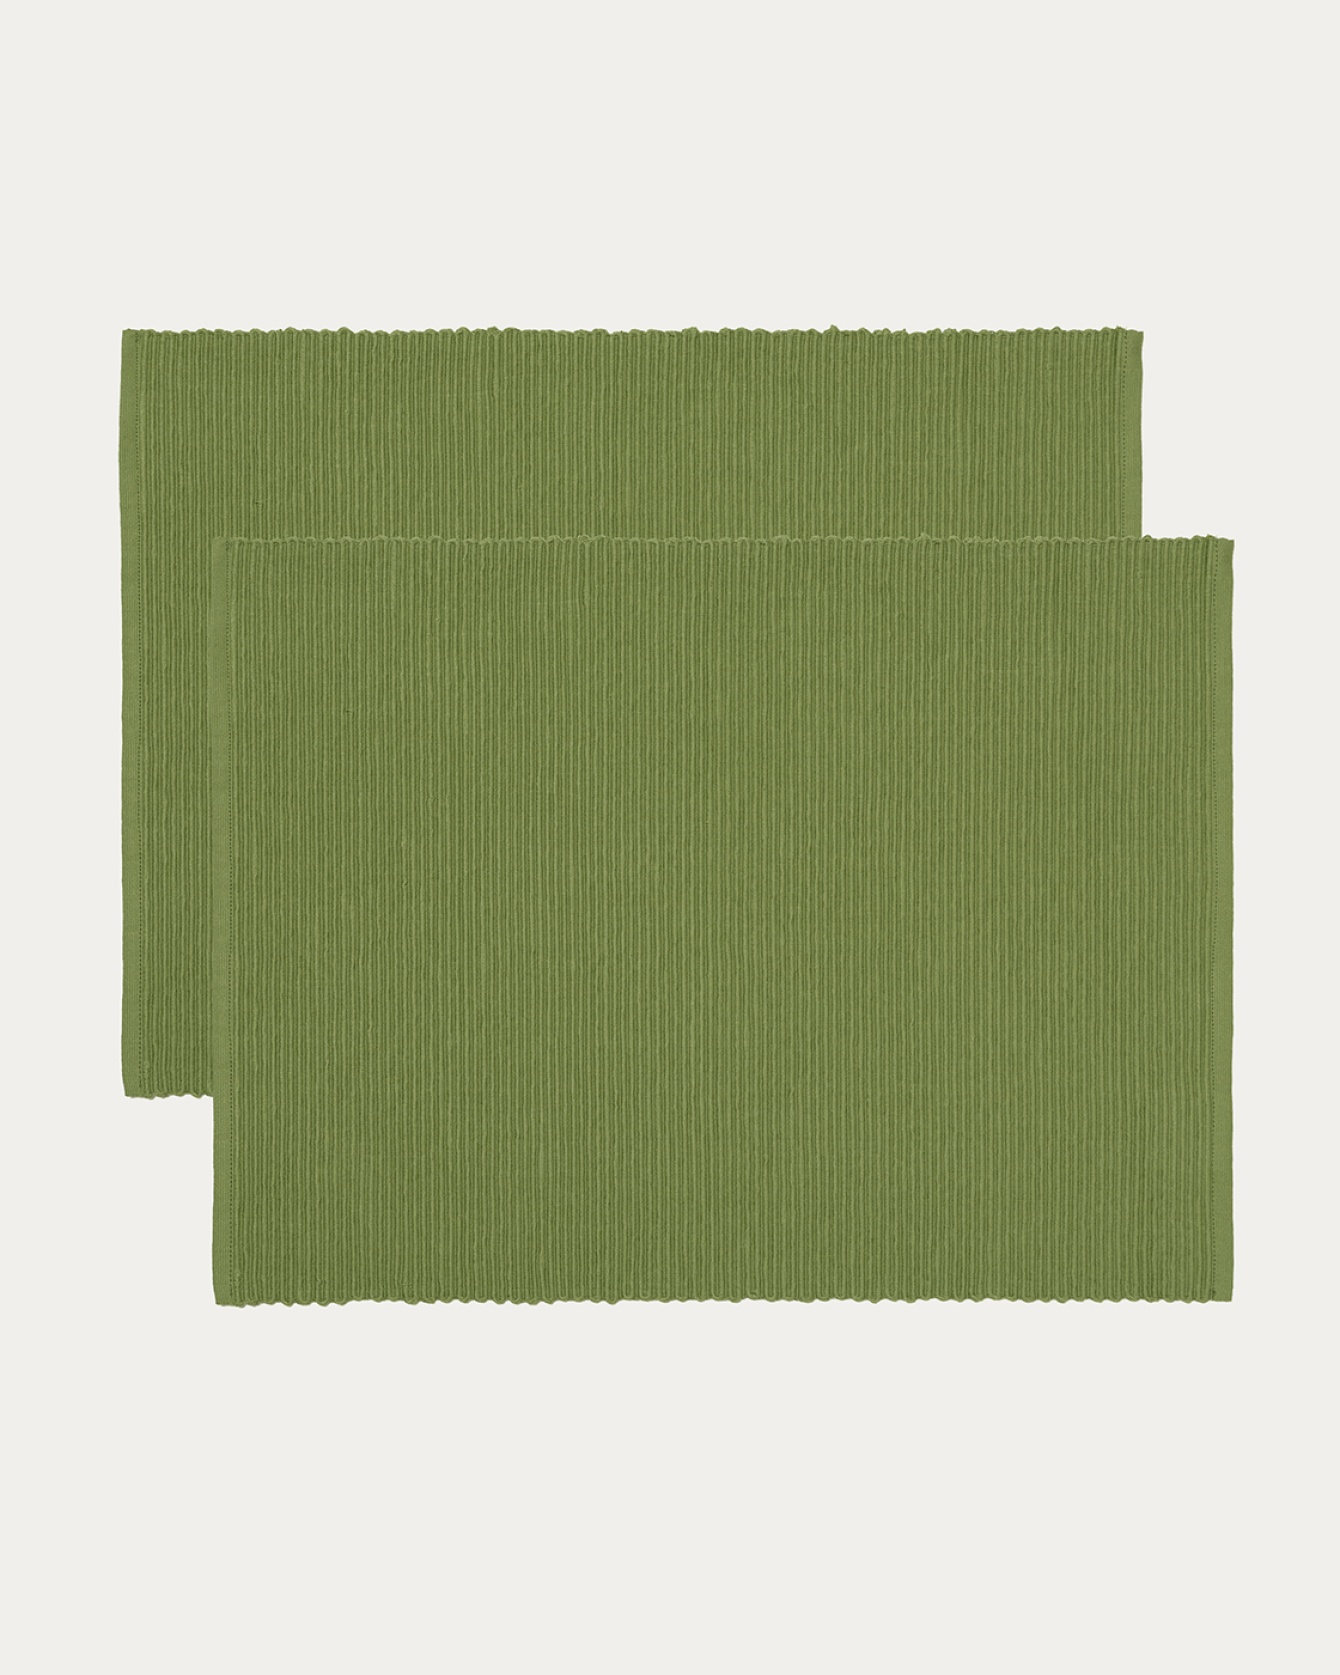 Produktbild moosgrün UNI Tischset aus weicher Baumwolle in Rippenqualität von LINUM DESIGN. Größe 35x46 cm und in 2er-Pack verkauft.